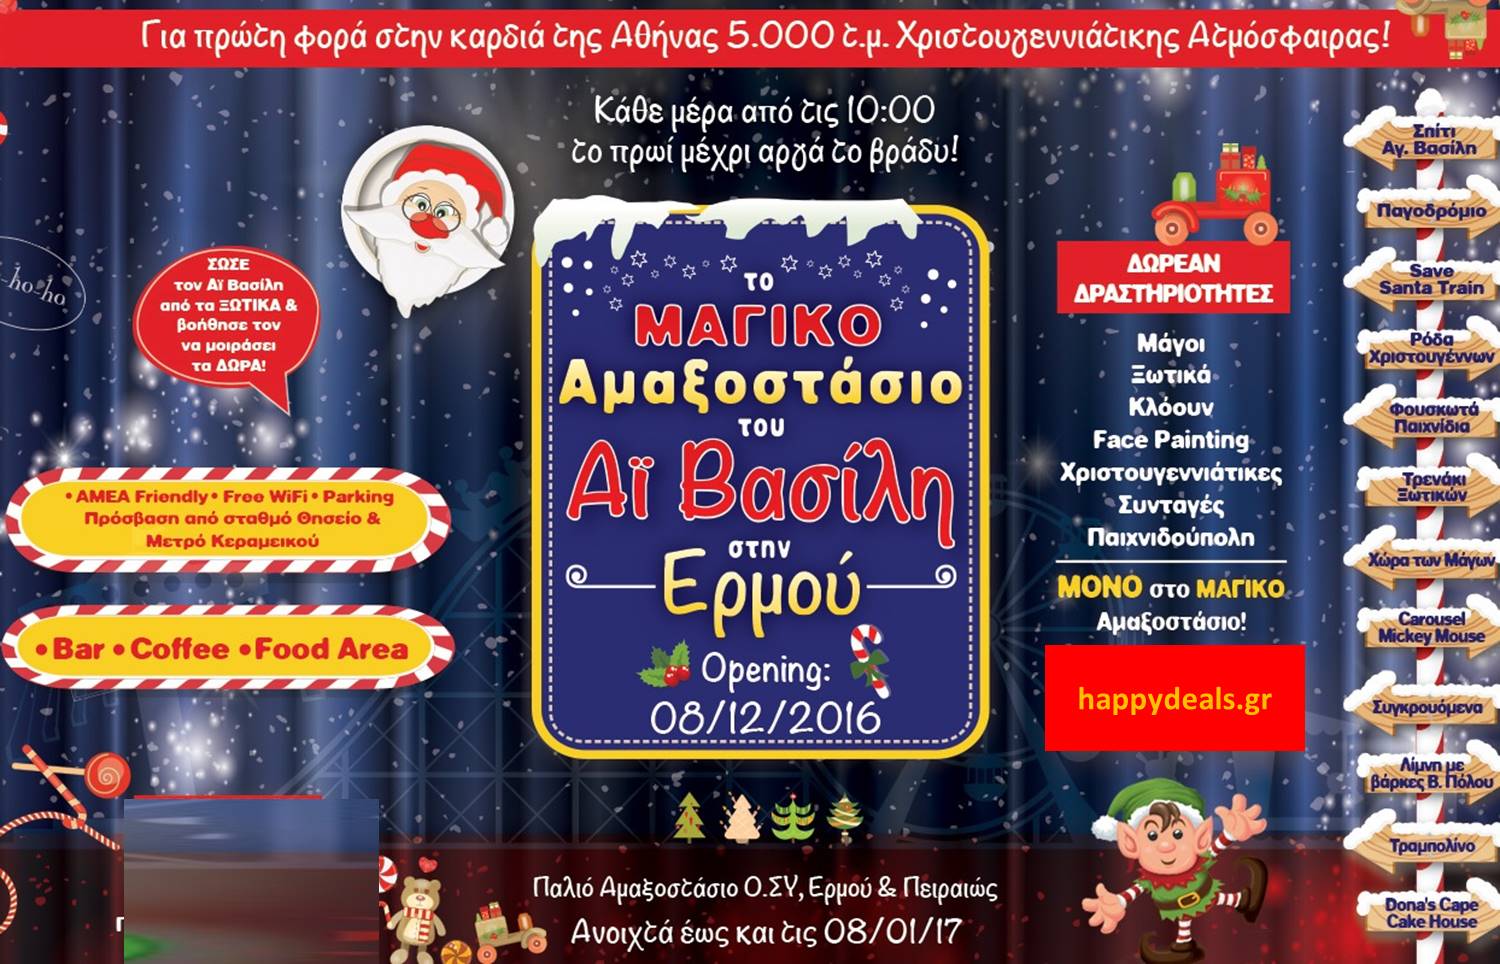 Το Μαγικό Αμαξοστάσιο του Άγιου Βασίλη: ΜΟΝΟ 1€ για All Day Pass στο μεγαλύτερο Χριστουγεννιάτικο πάρκο της Αθήνας στο Γκάζι (Παλιό Αμαξοστάσιο Ο.ΣΥ)